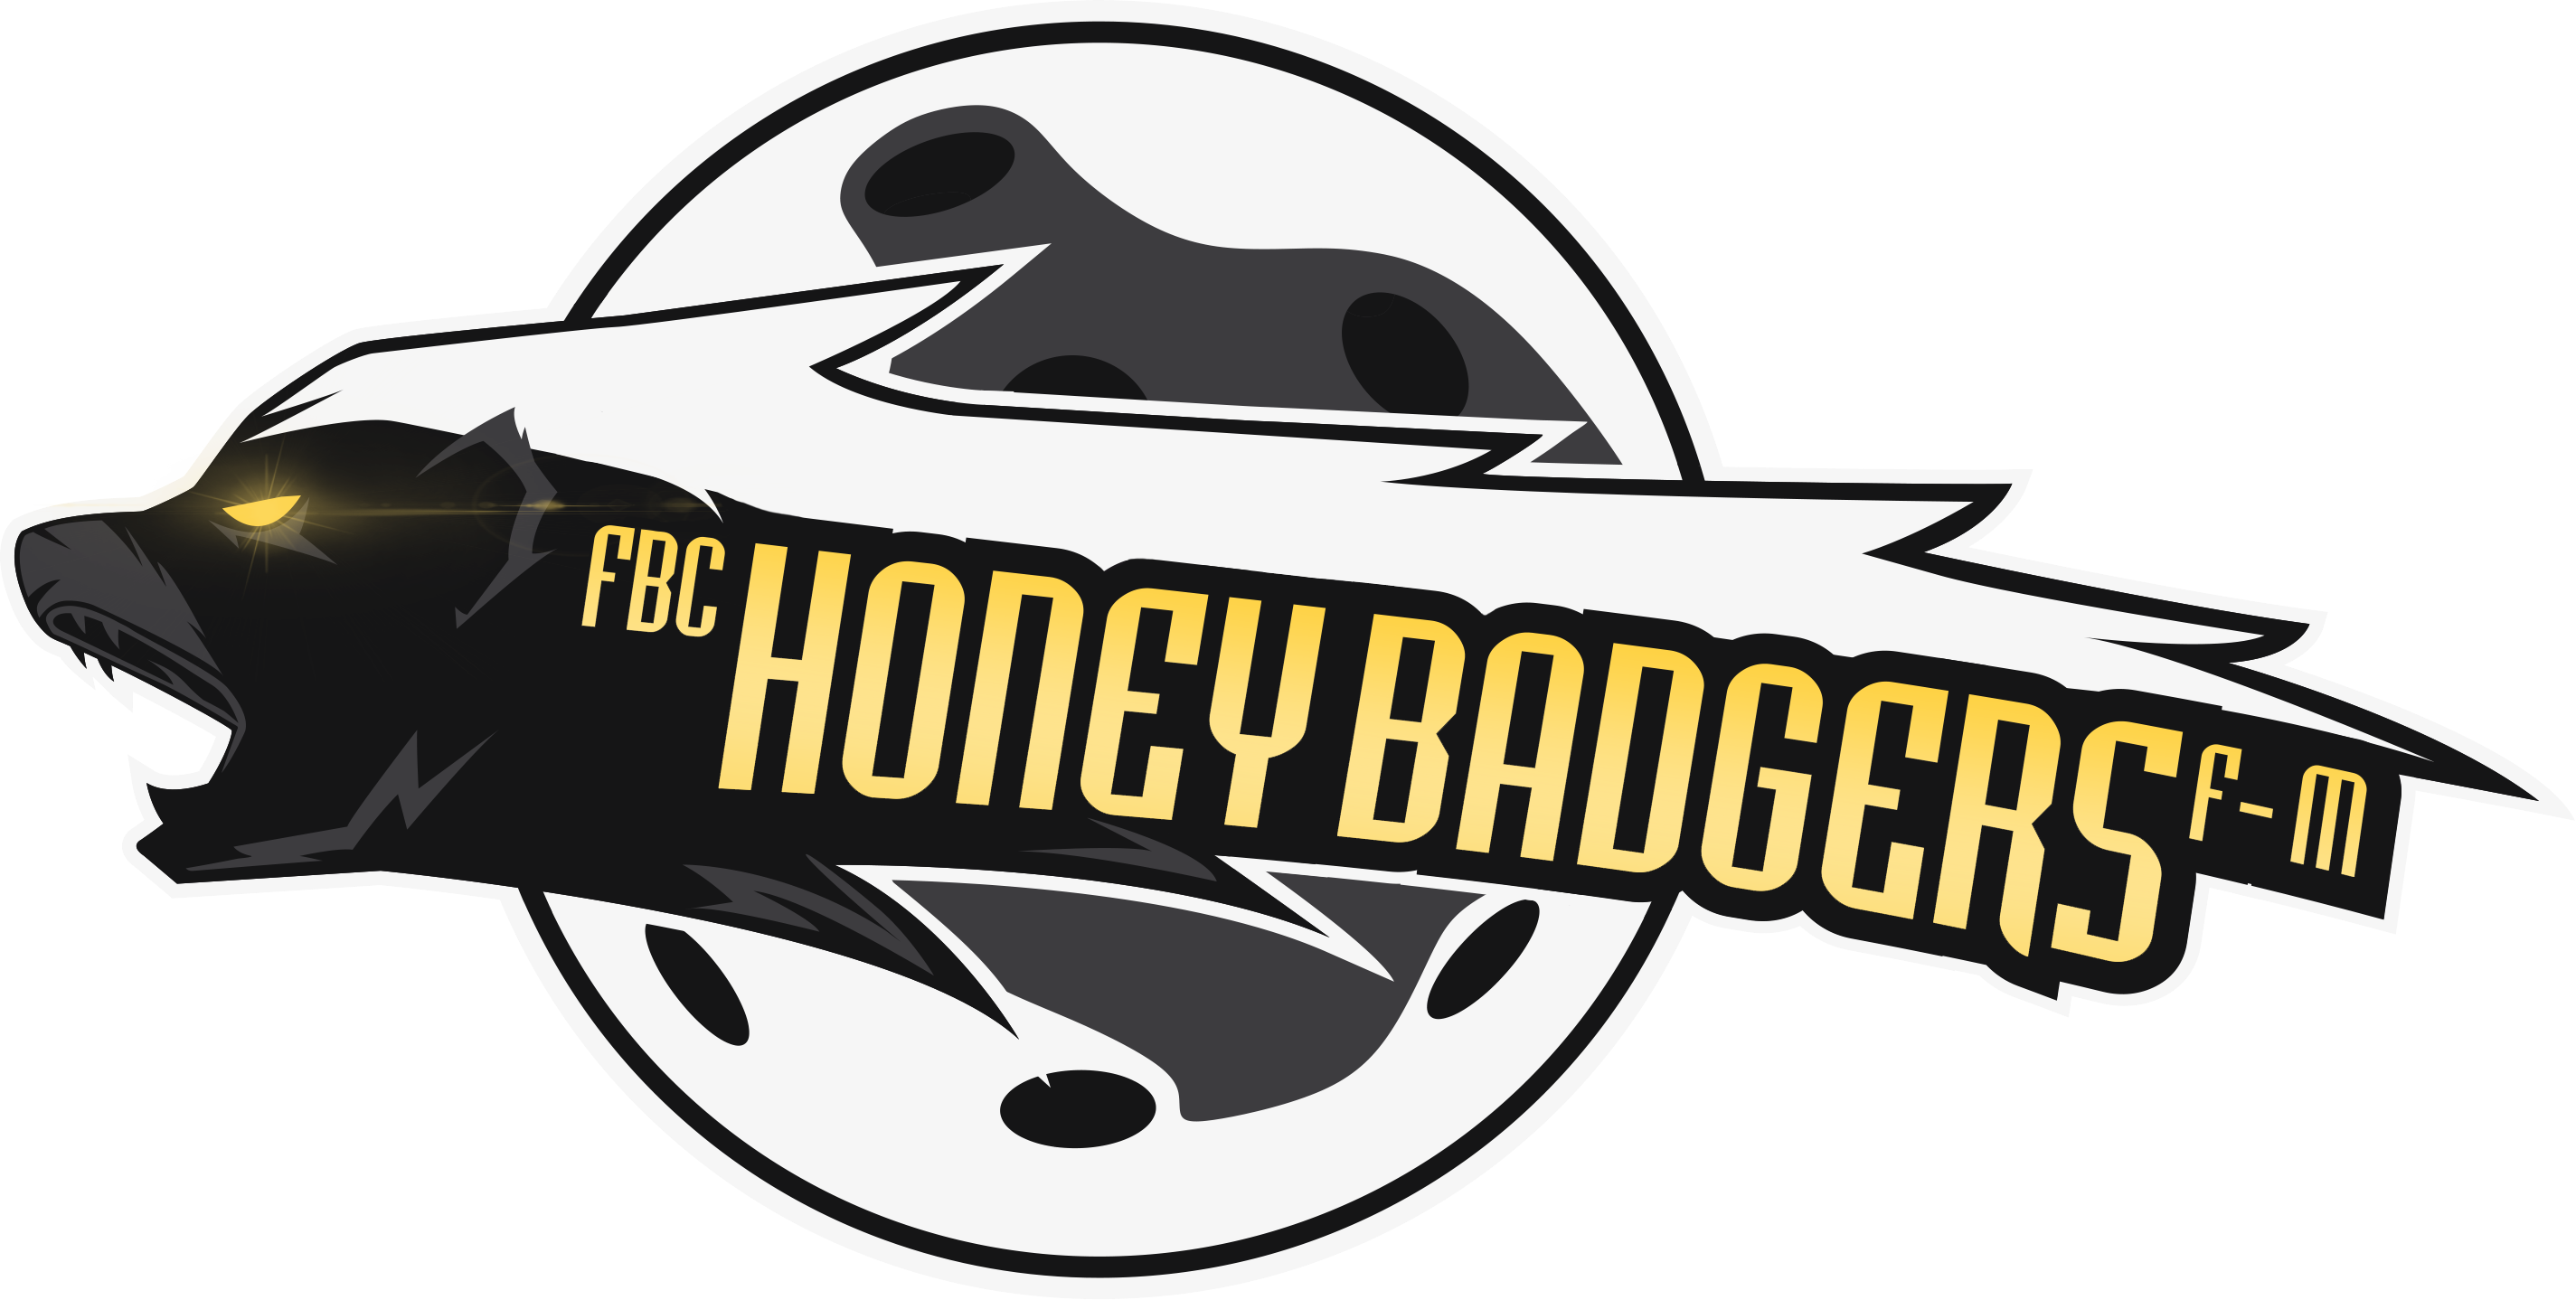 Fbc Honey Badgers F-m - Fbc Honey Badgers F-m (2849x1438)